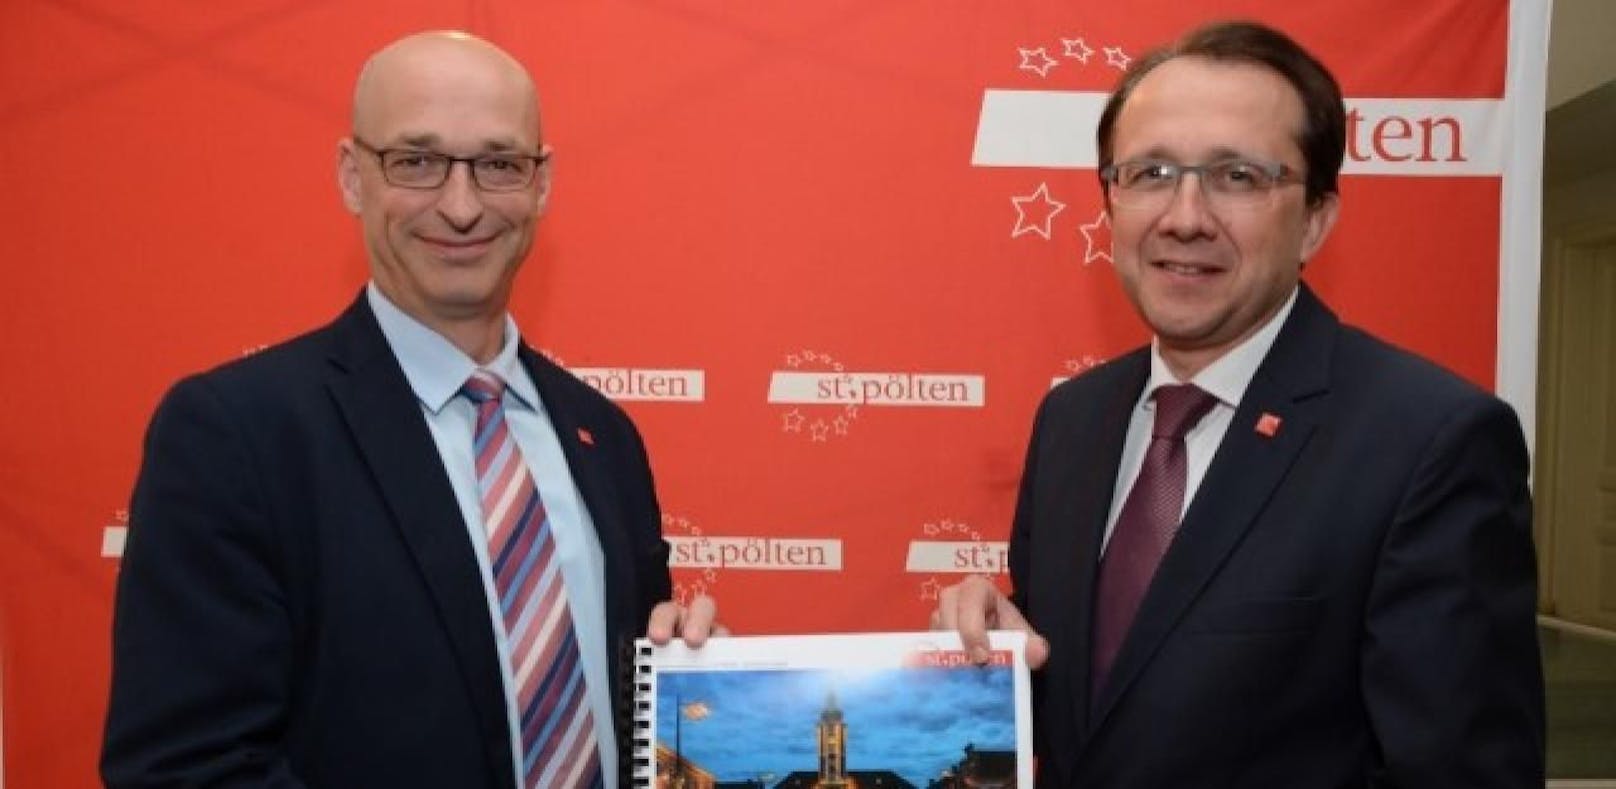 St. Pöltens Finanzchef Thomas Wolfsberger (li.) und Bürgermeister Matthias Stadler präsentierten den Rechnungsabschluss.